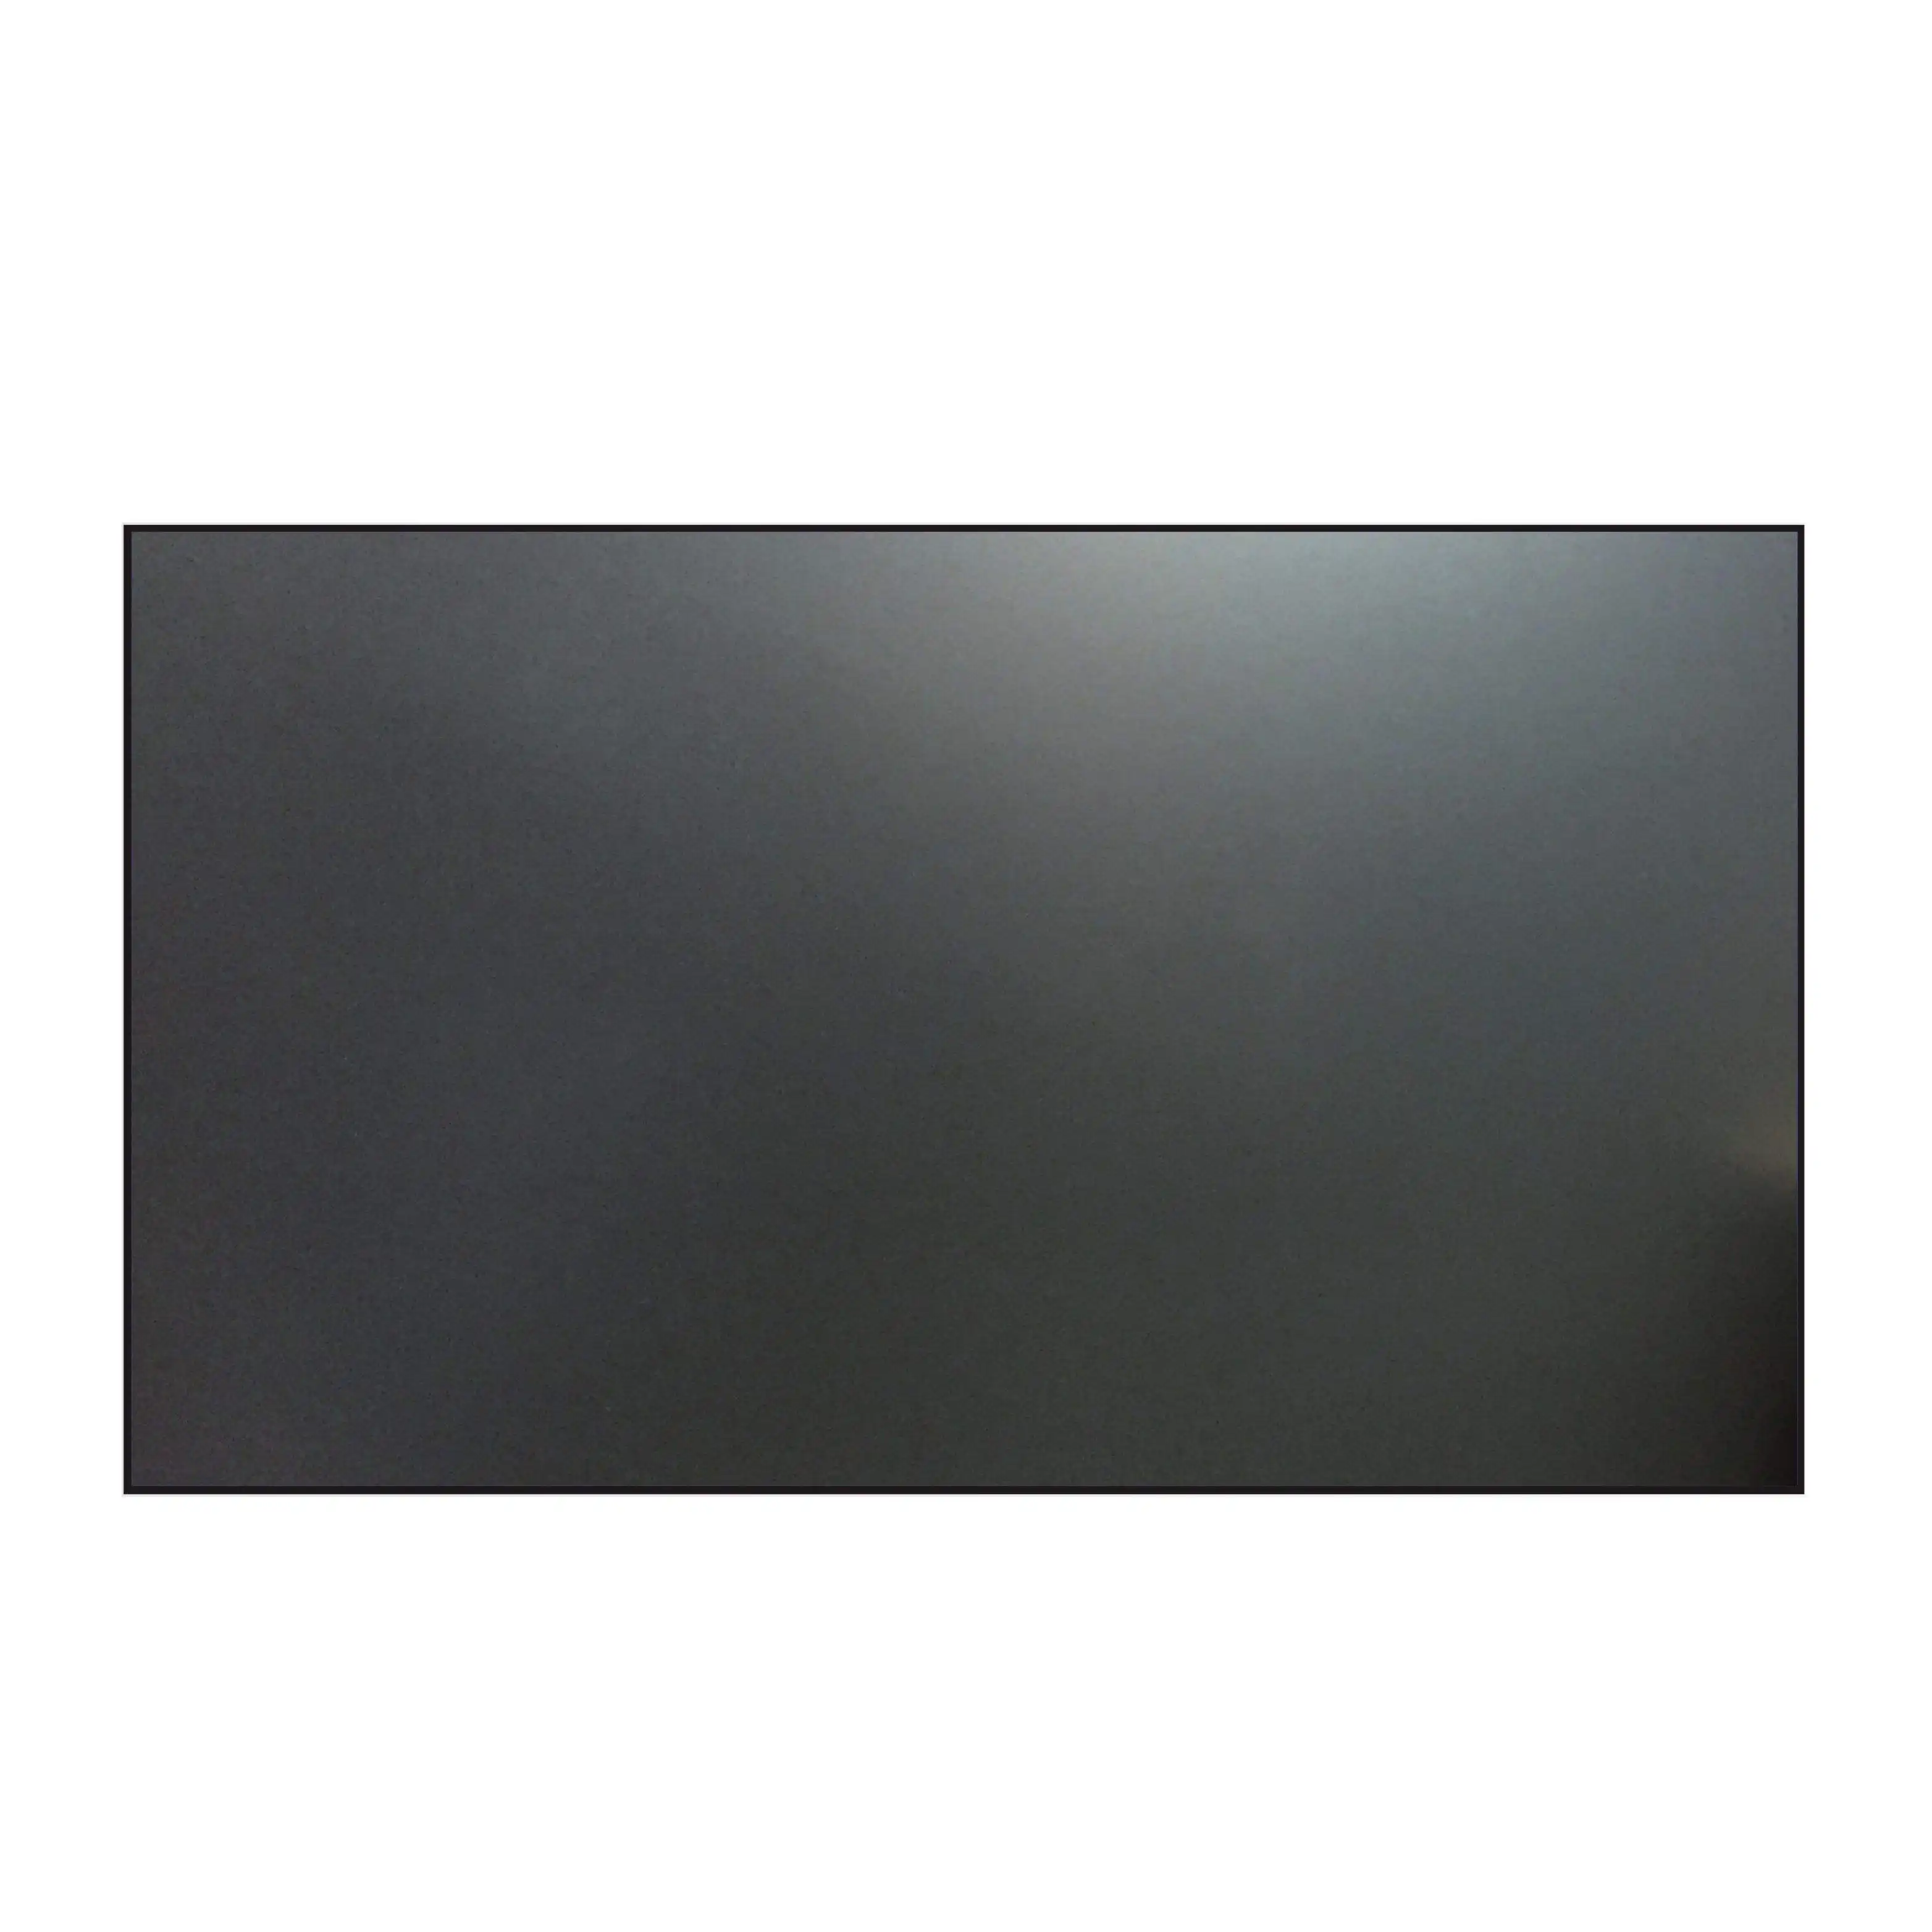 PET kristal CBSP 4K 120 "sabit çerçeve ultra kısa atmak ust clr ekran ortam ışığı reddetme alr pet projeksiyon perdesi